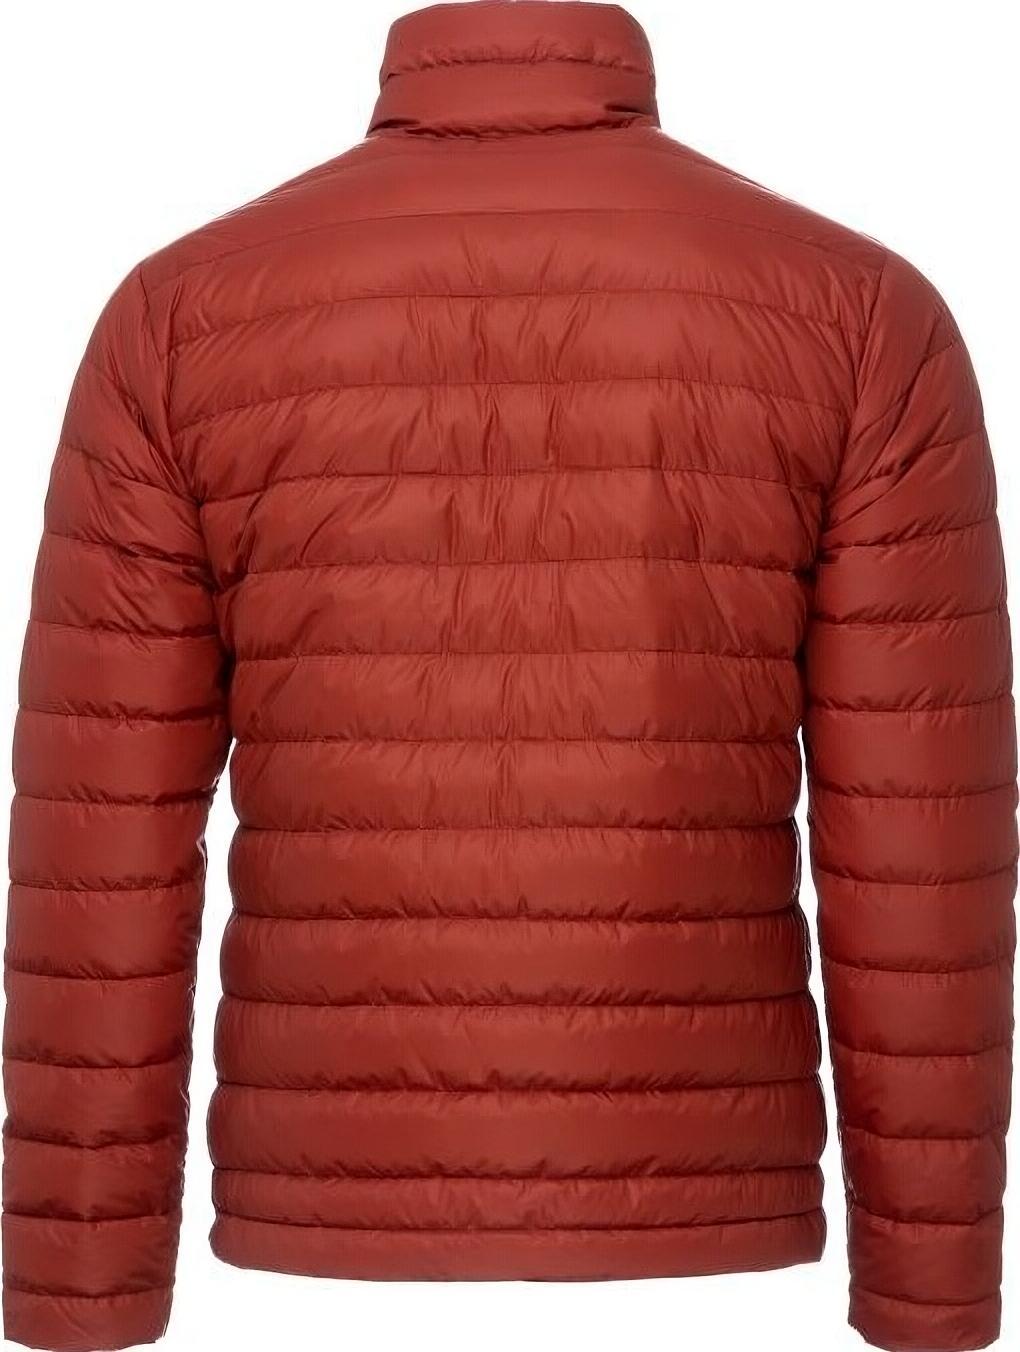 Куртка мужская Turbat Trek Urban Mns bossa nova XL терракот фото 3